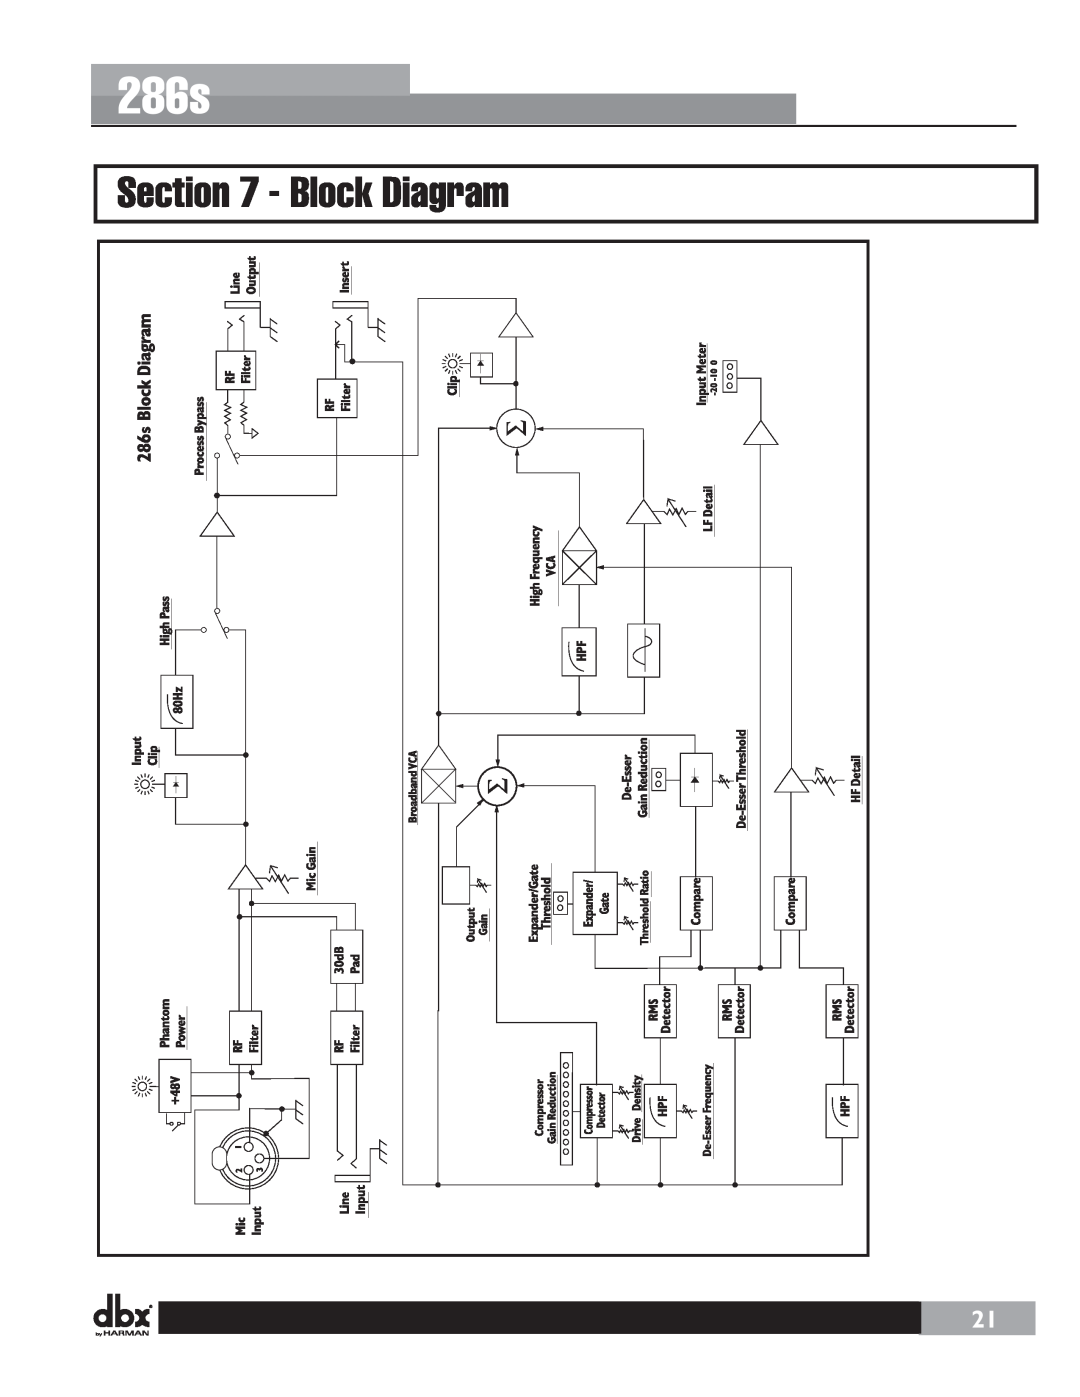 Harman user manual Block Diagram, 286s 